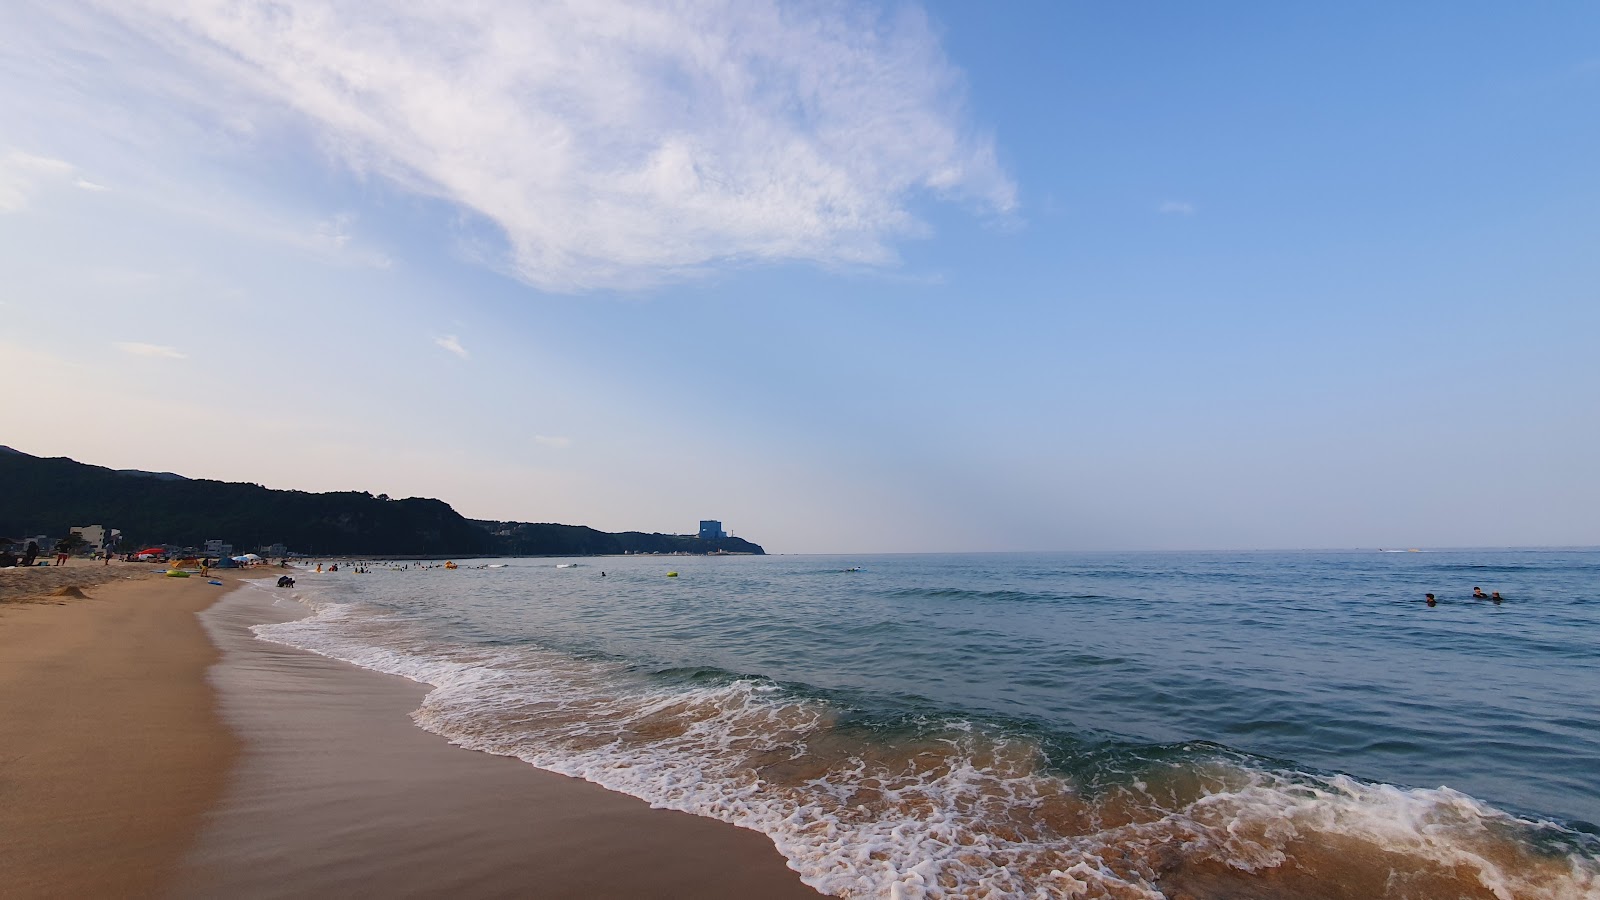 Zdjęcie Banhun Beach z powierzchnią jasny piasek